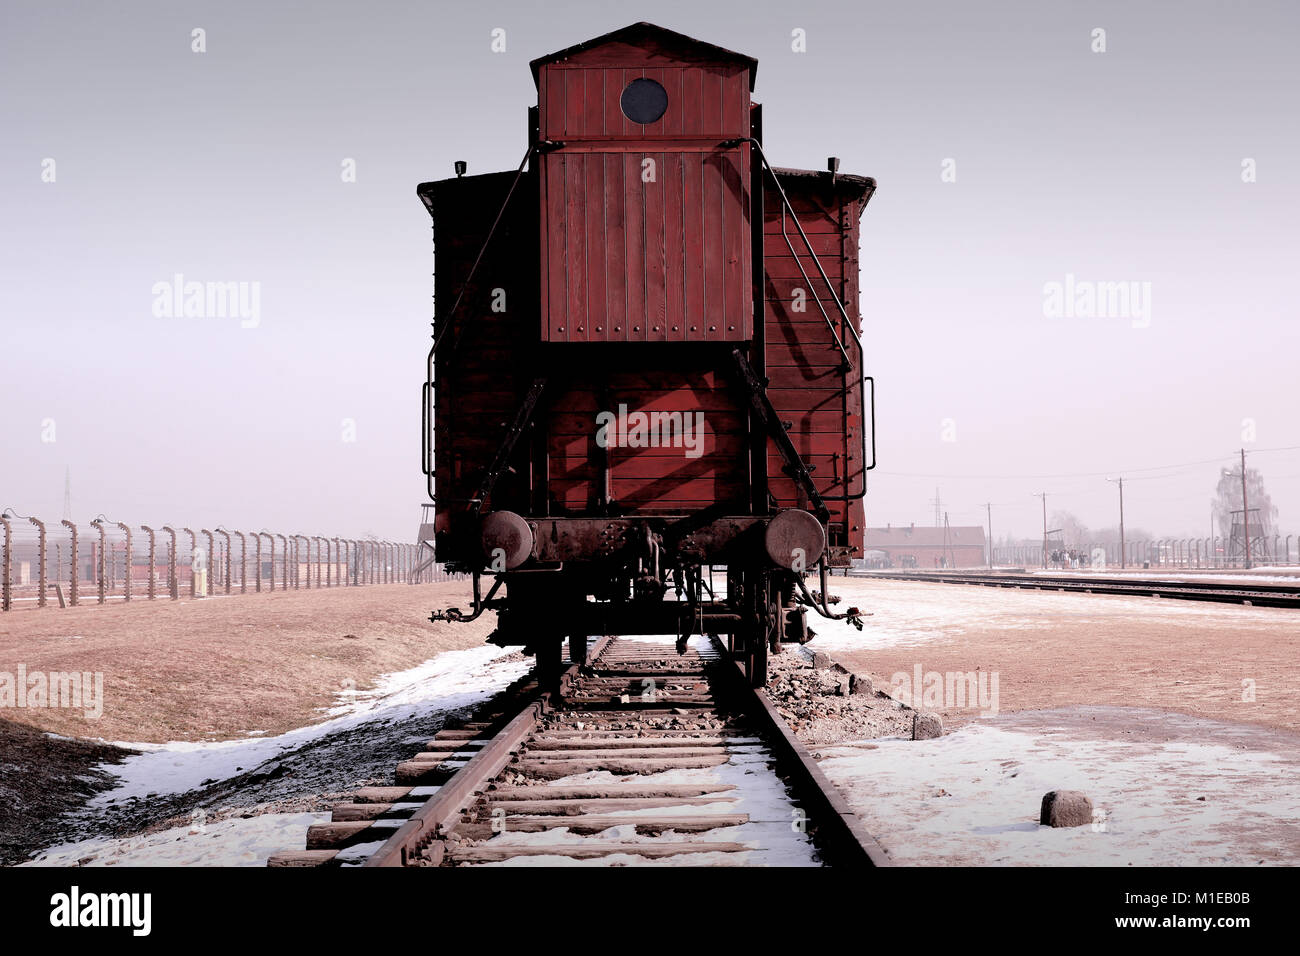 Conservato originale Bllod Red carrello ferroviario sulla piattaforma Judenrampe all'interno di Auschwitz II - Birkenhau museo sito. Foto Stock